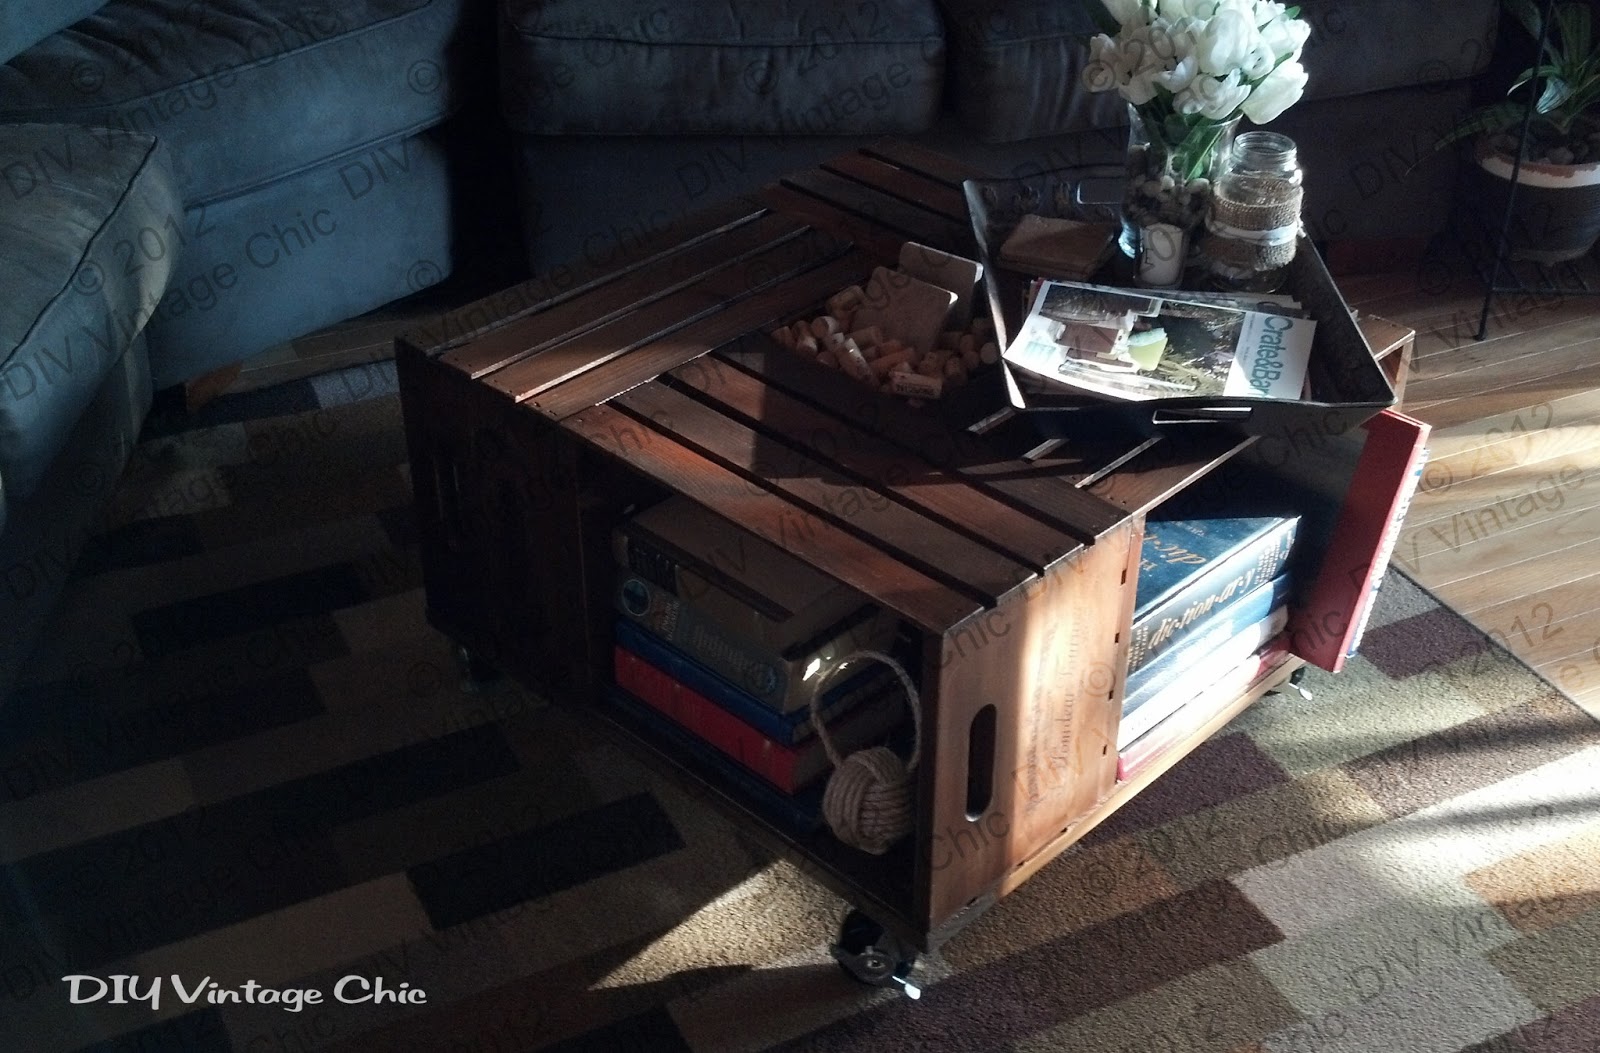 DIY Vintage Chic: Vintage Wine Crate Coffee Table